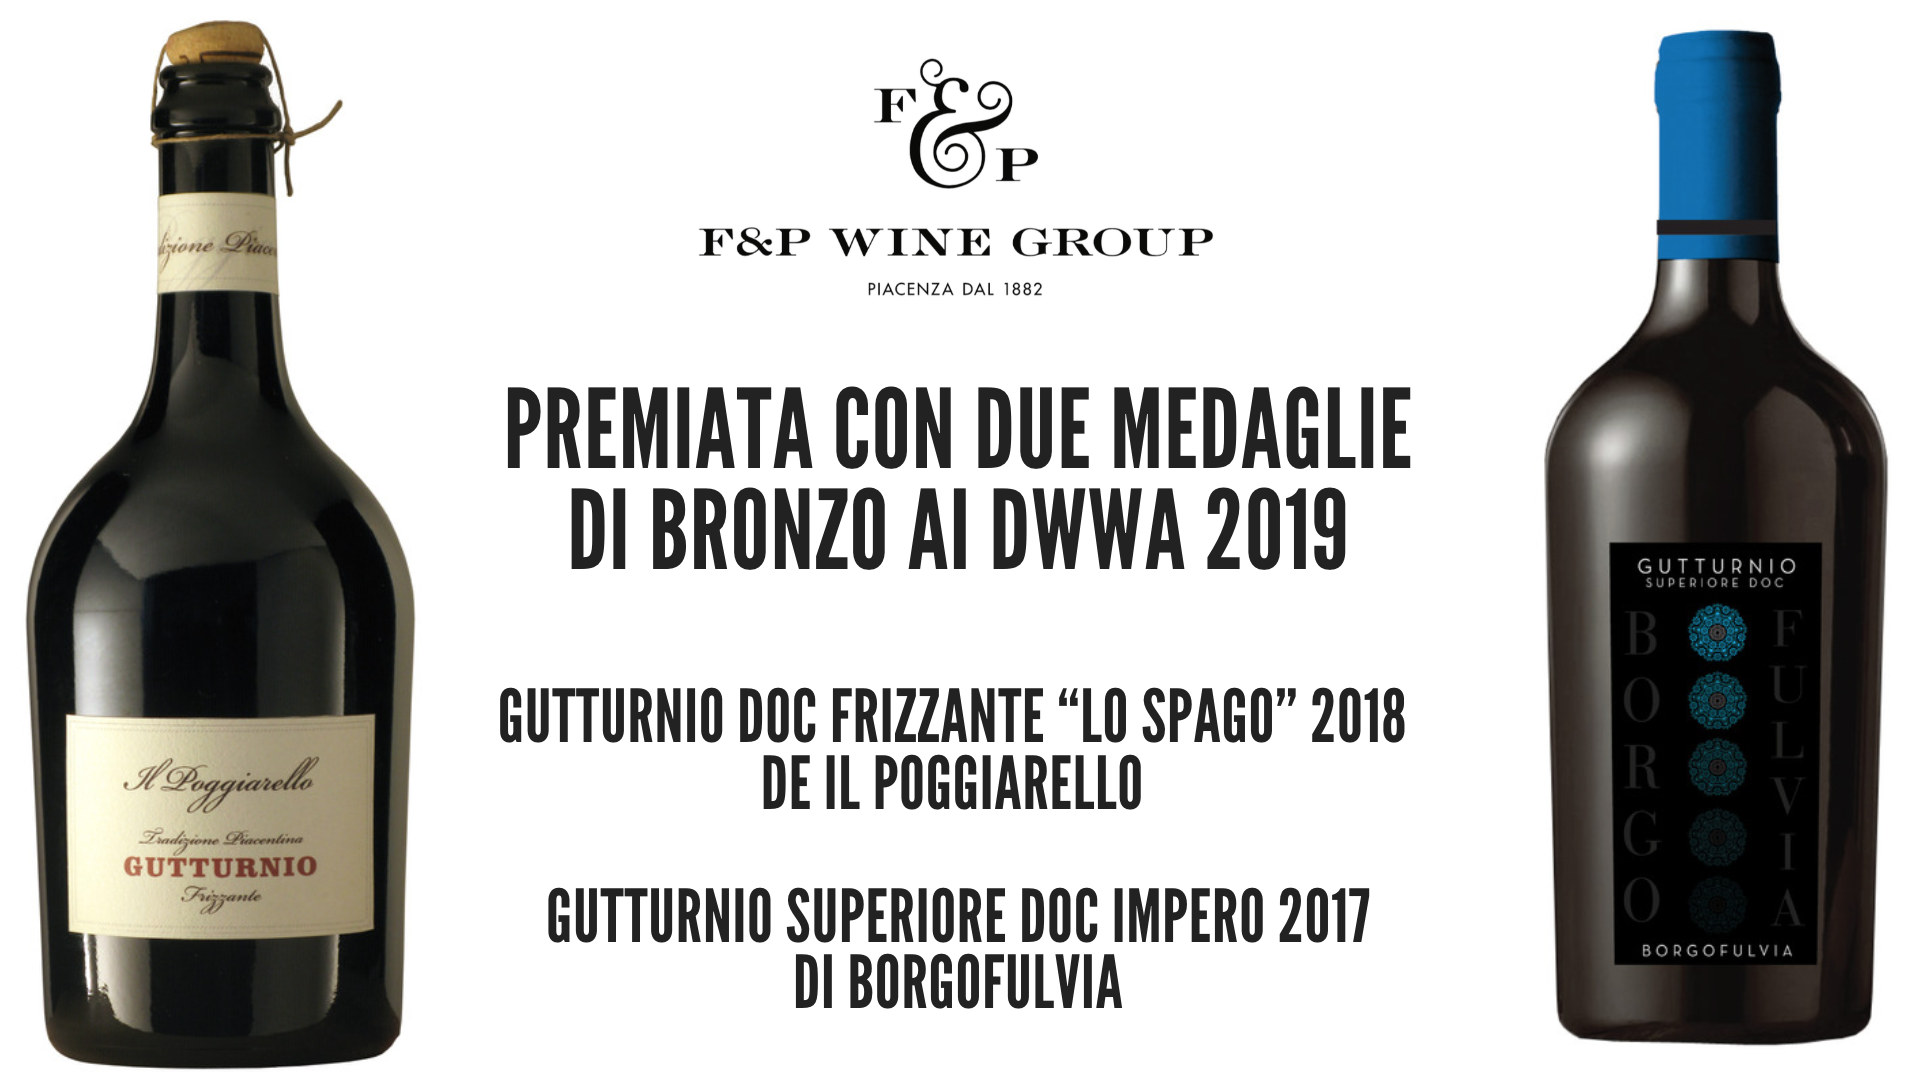 F&P Wine Group premiata al Decanter World Wine Awards 2019 con due etichette